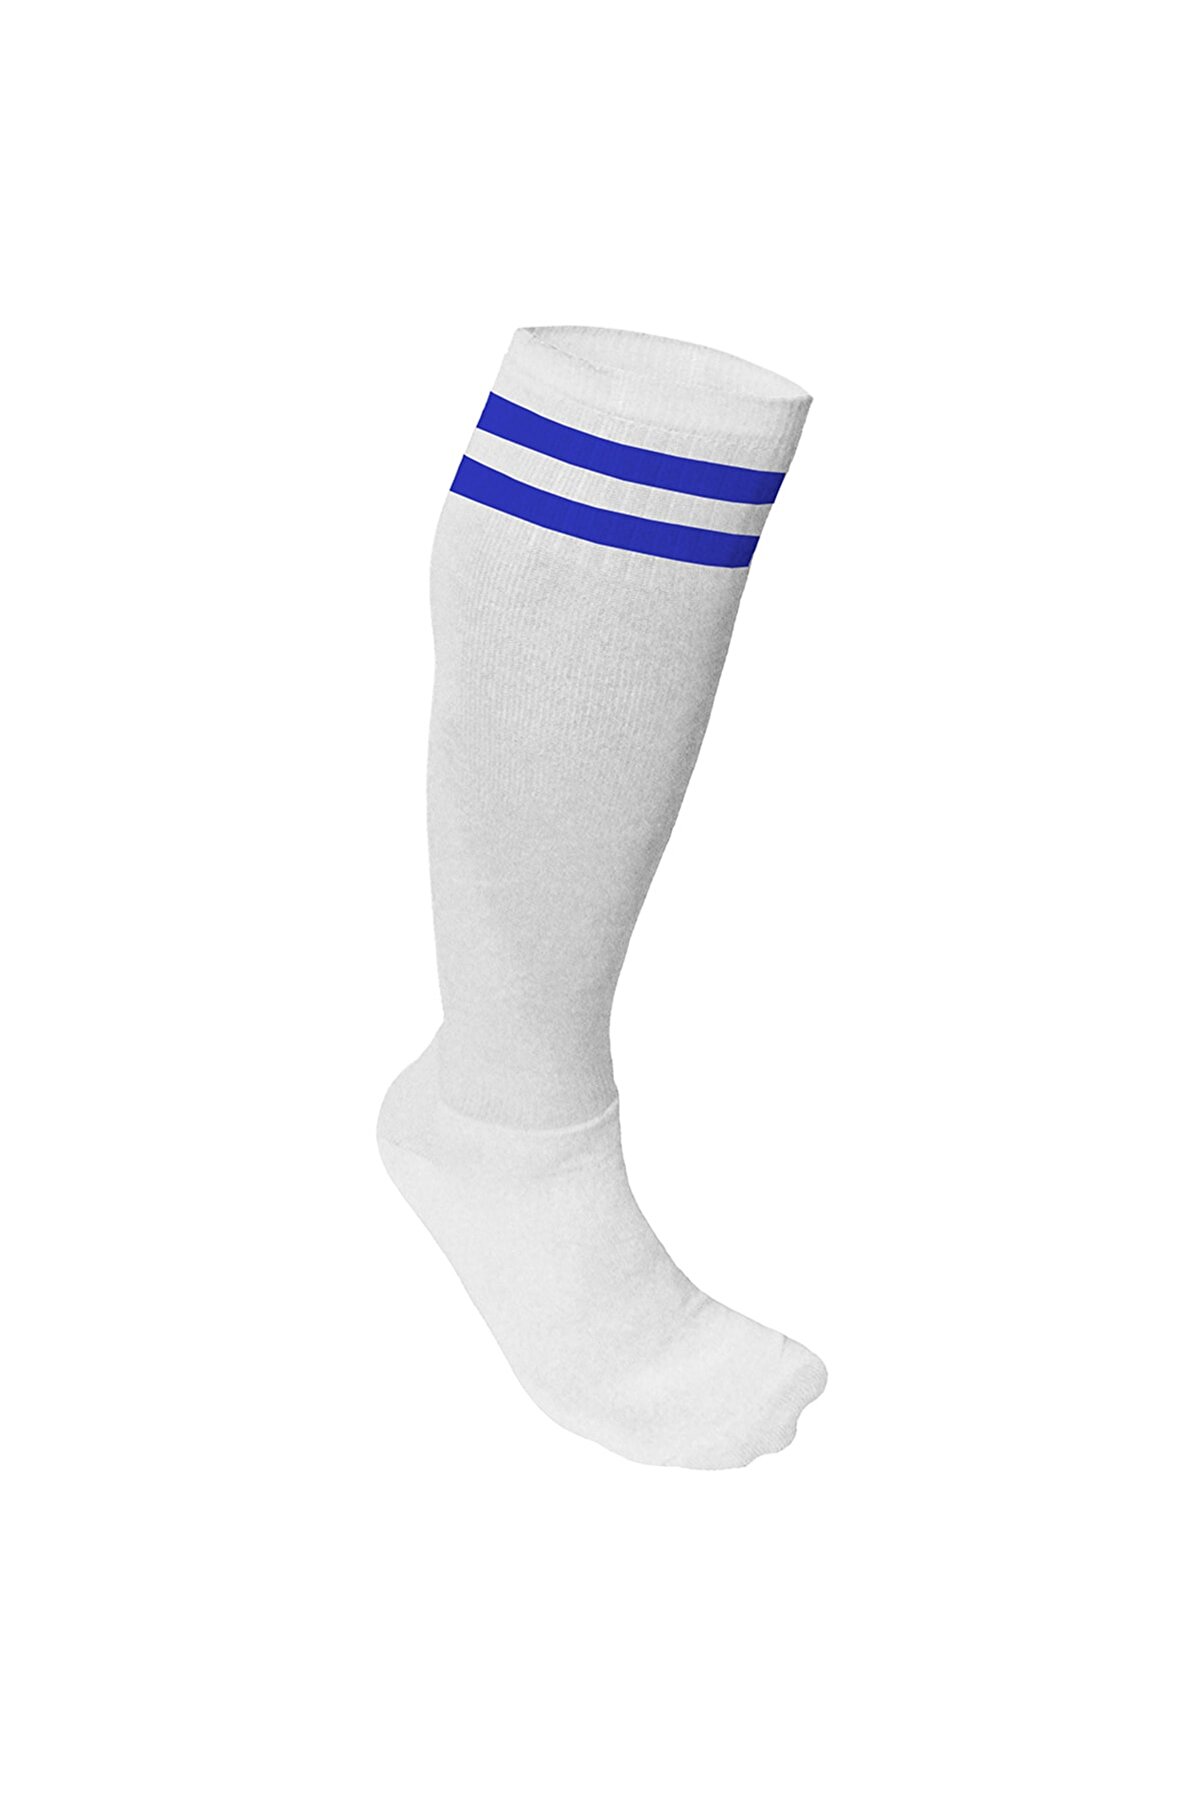 Spor724 Süper Futbol Tozluğu-Çorabı Beyaz Mavi - 36851